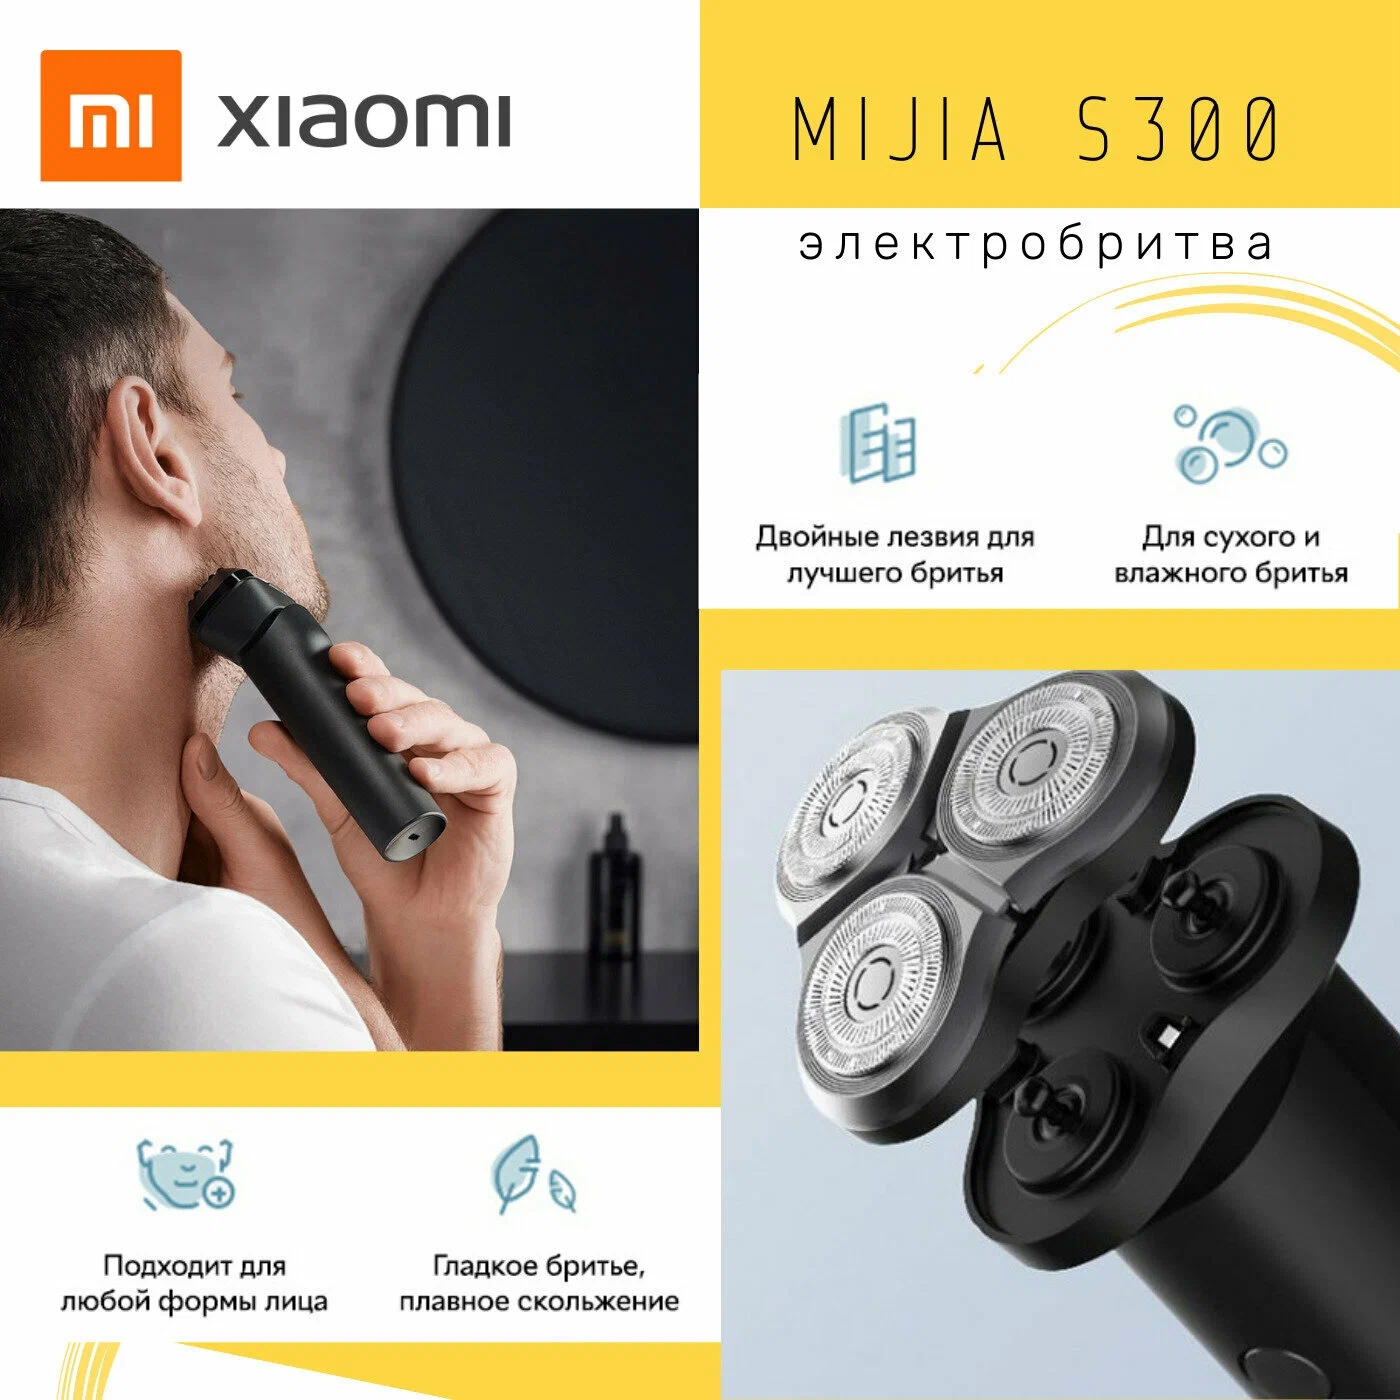 Электробритва Xiaomi Mijia S300 Черный в Челябинске купить по недорогим ценам с доставкой